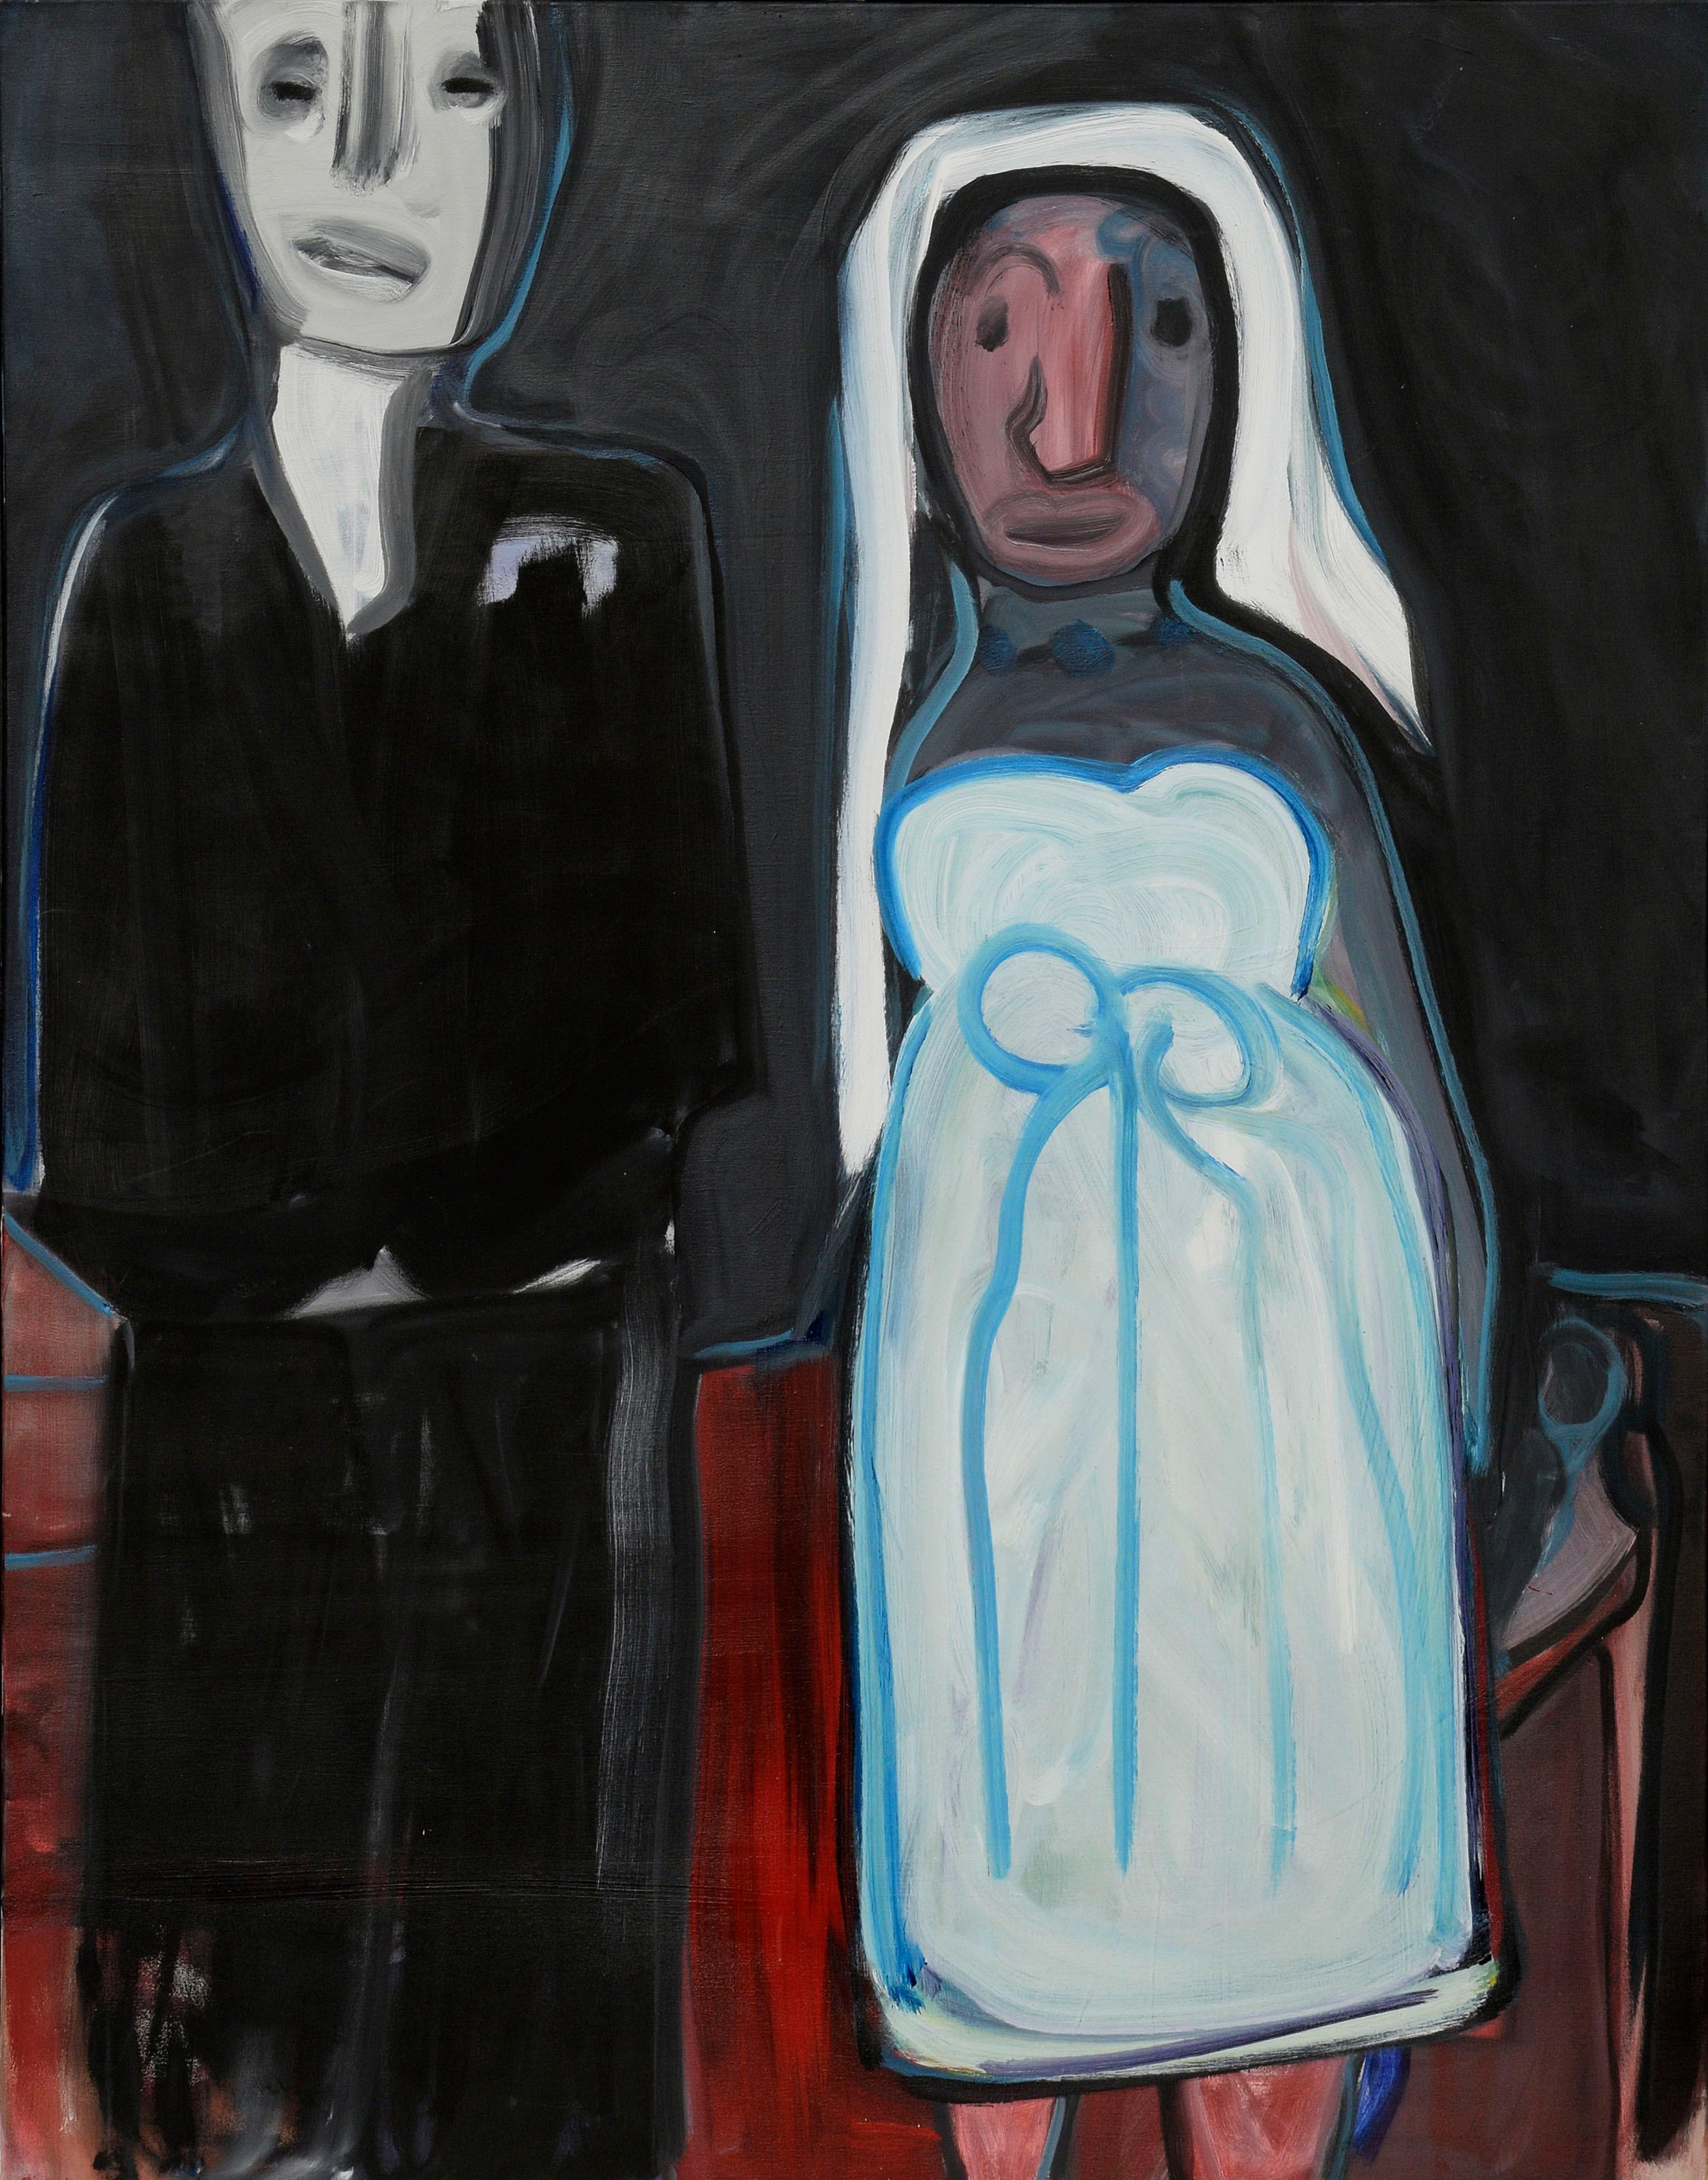 Zwei abstrakt-expressionistische, figurative Paare in großformatigem Stil – Painting von Julius Wasserstein